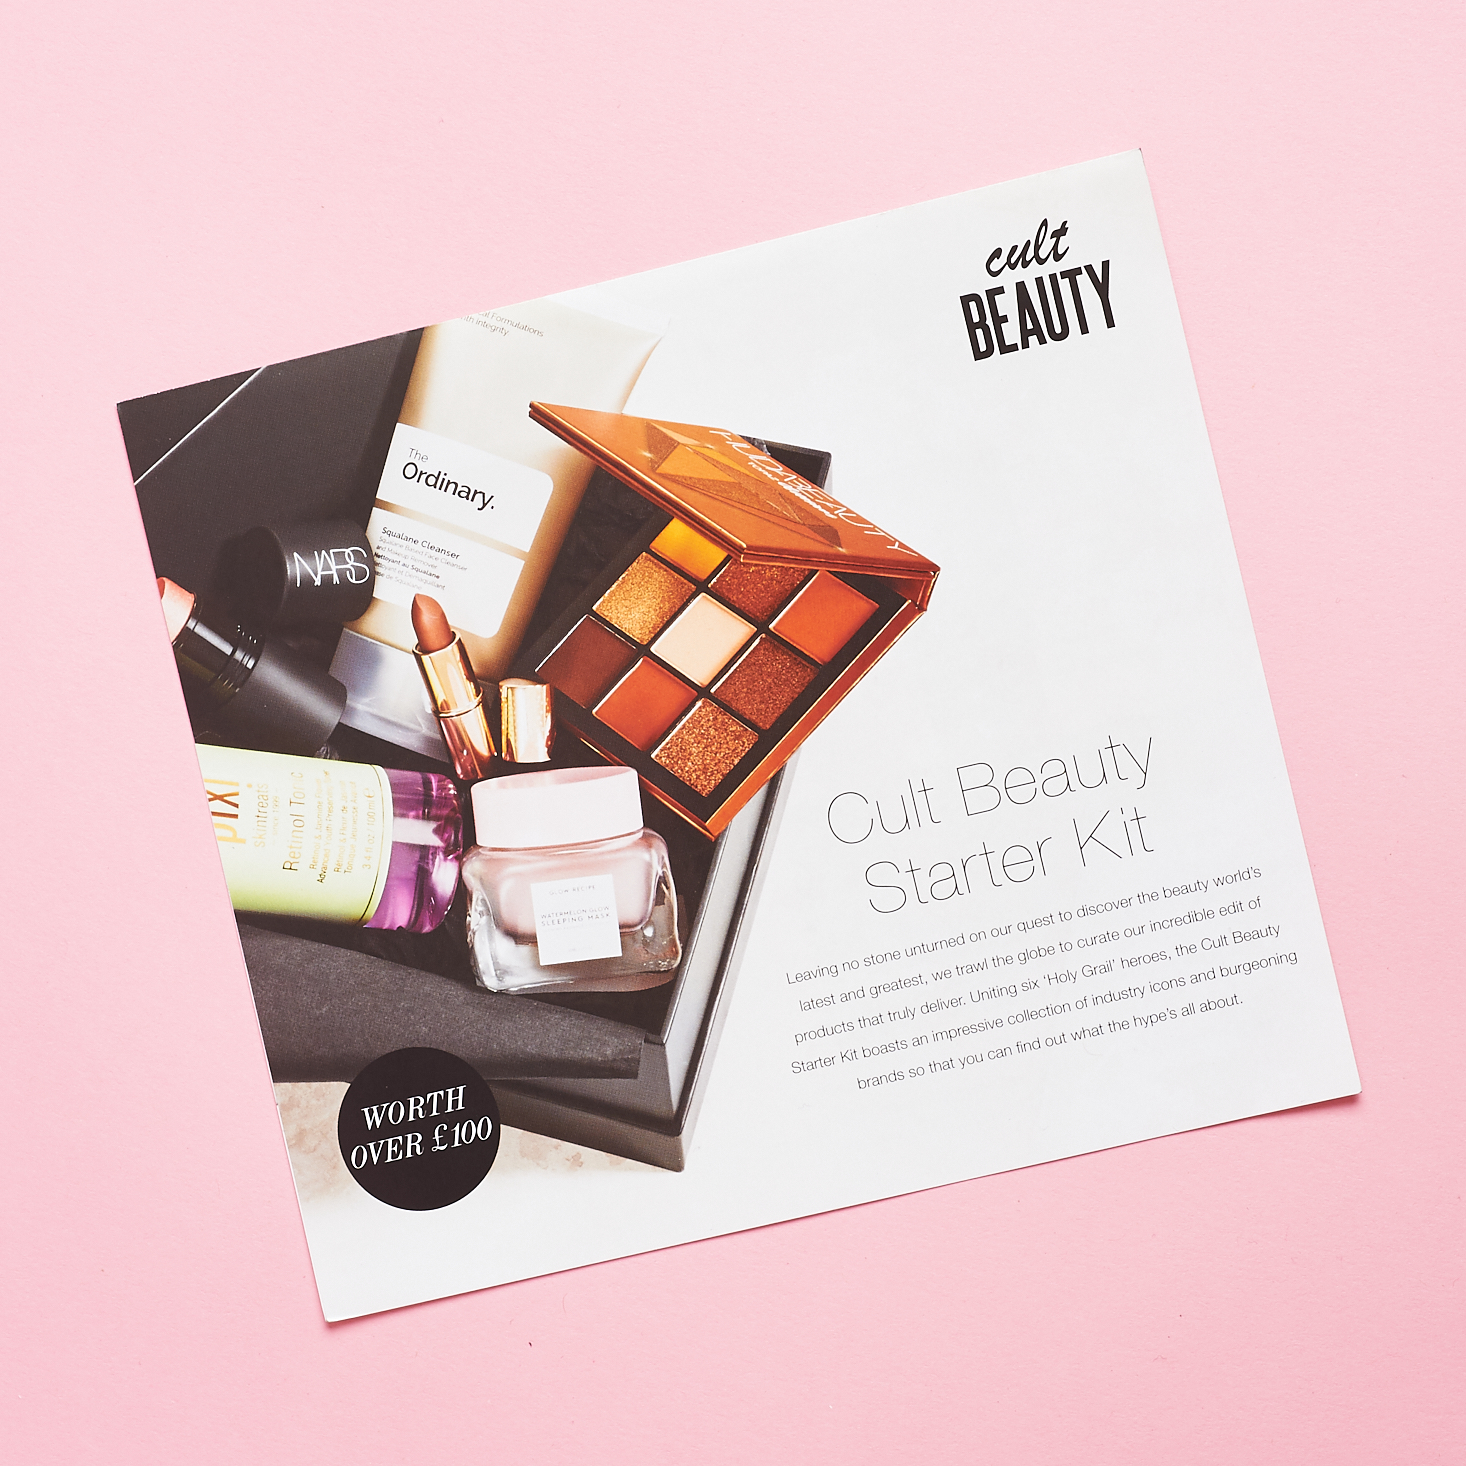 OPened Cult Beauty Starter Kit Info booklet